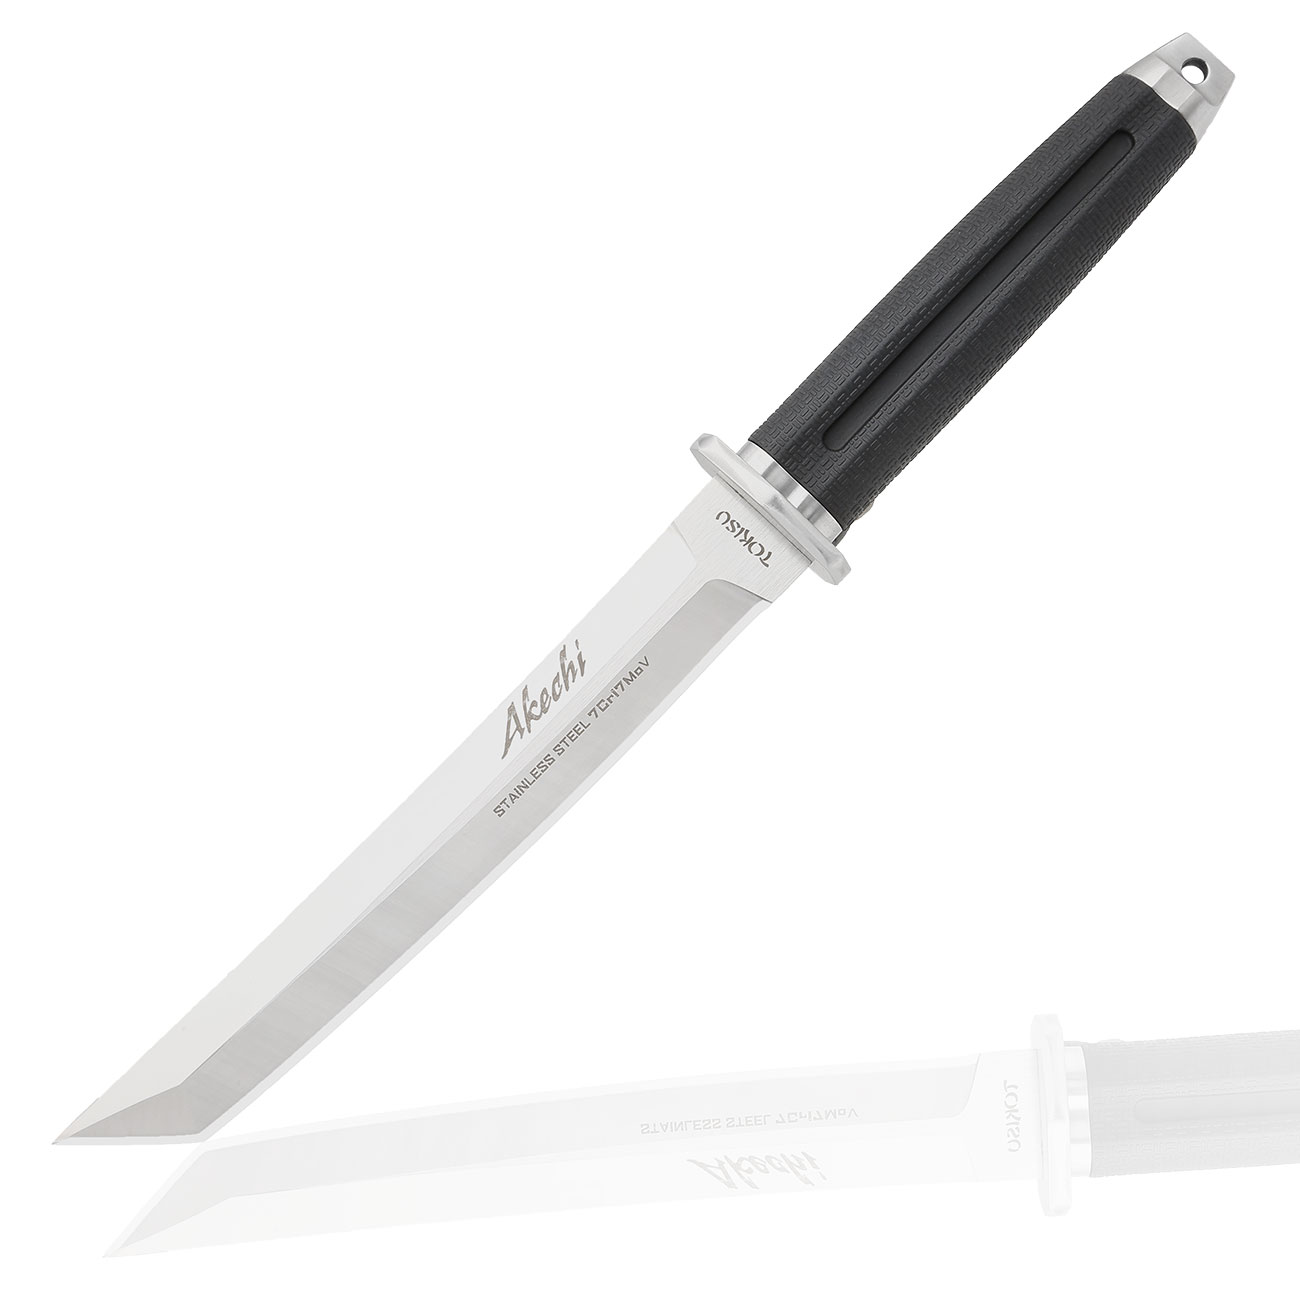 Tokisu Taktisches Messer Akechi Tantoklinge silber/schwarz inkl. Grtelscheide und Box